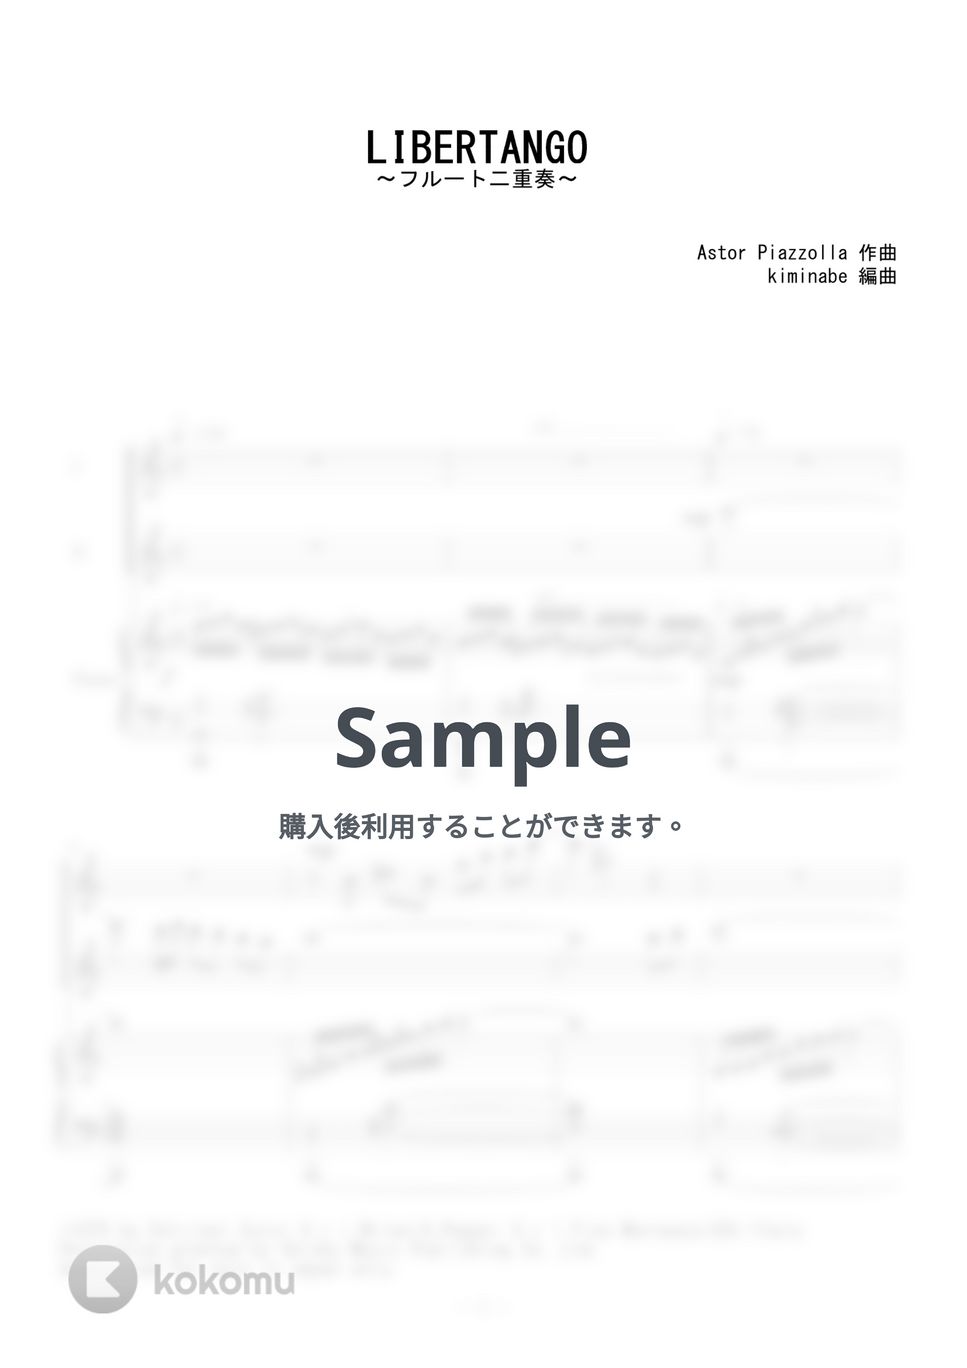 ピアソラ - LIBERTANGO (フルート二重奏) by kiminabe